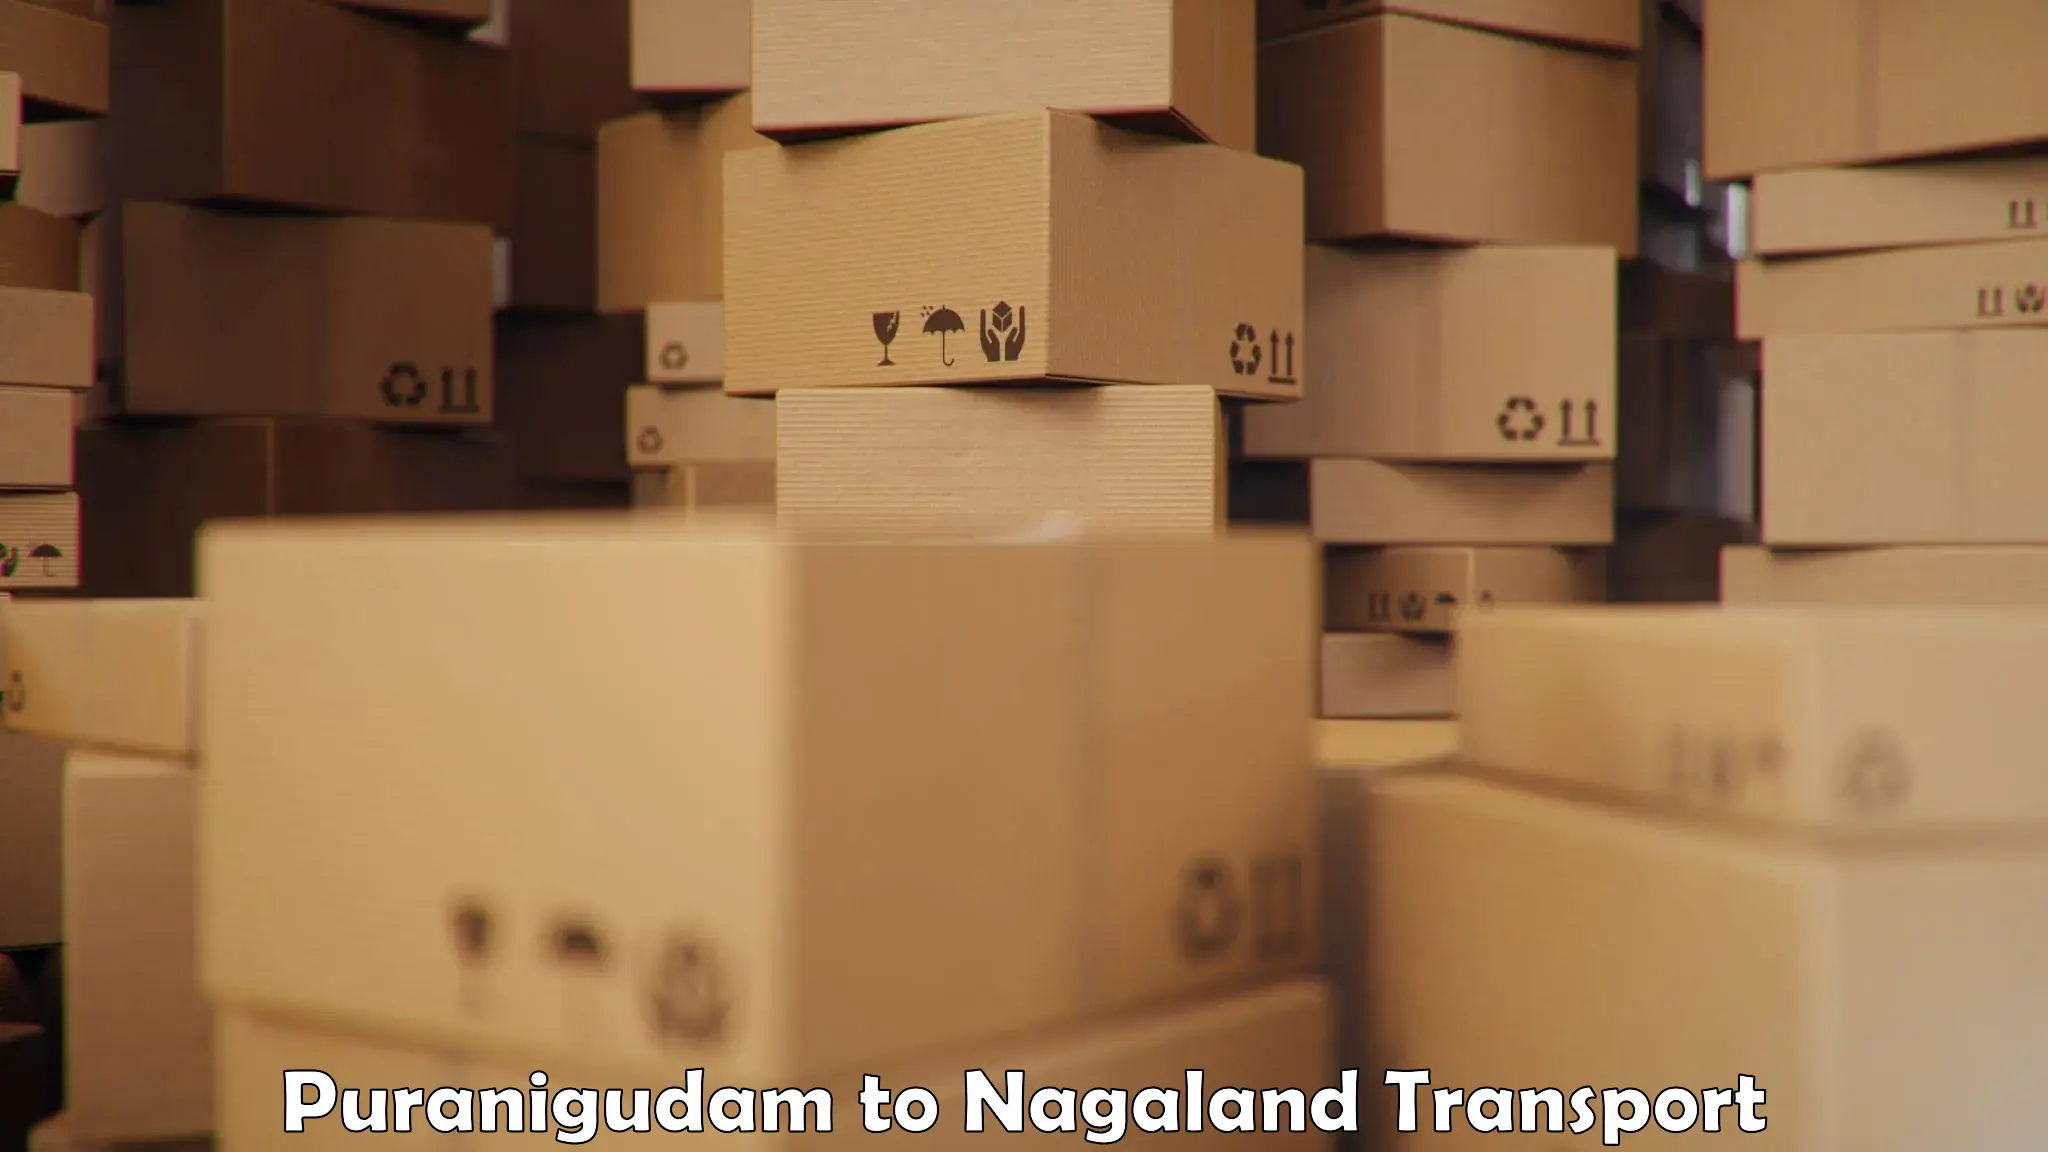 Cargo train transport services Puranigudam to Tuensang